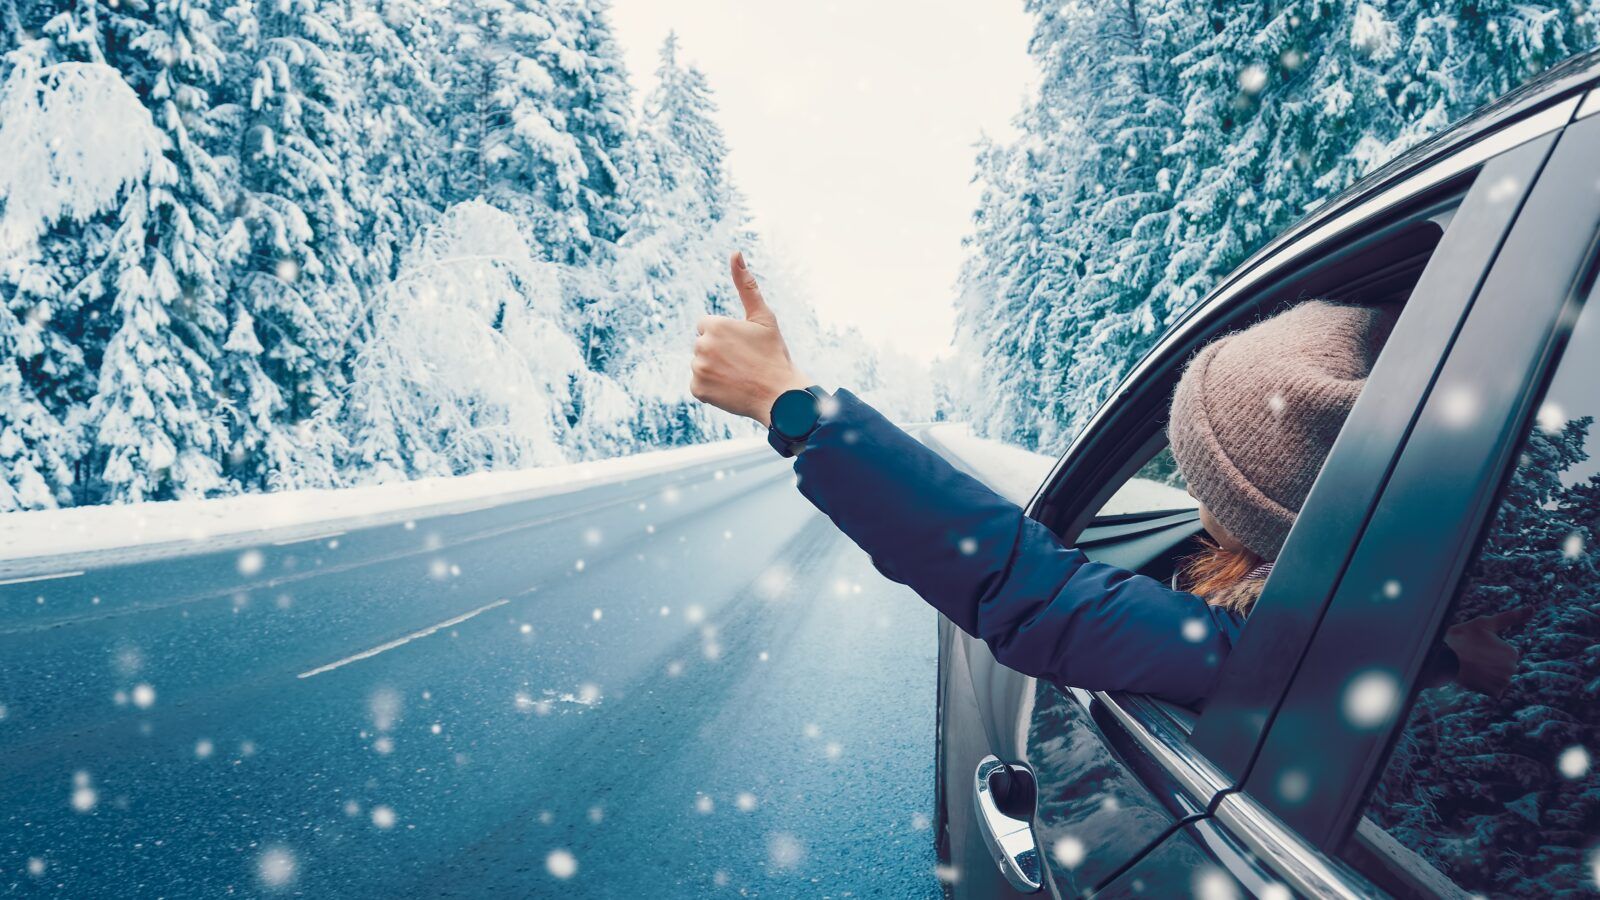 Protégez votre voiture contre les méfaits de l'hiver: quelques conseils  pratiques - MAES